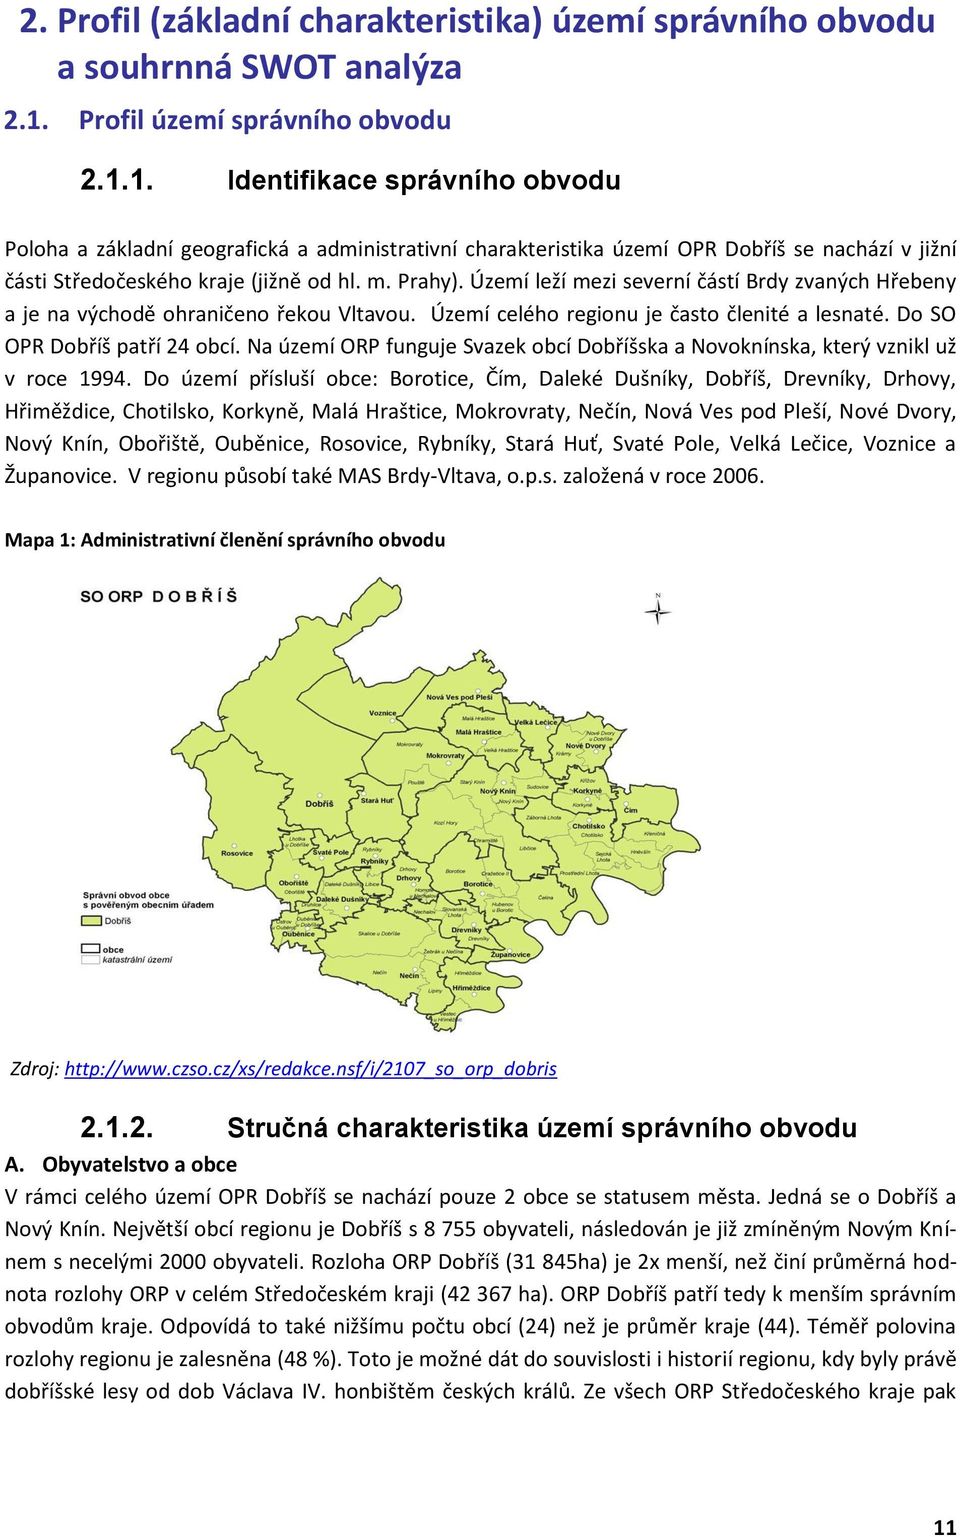 1. Identifikace správního obvodu Poloha a základní geografická a administrativní charakteristika území OPR Dobříš se nachází v jižní části Středočeského kraje (jižně od hl. m. Prahy).